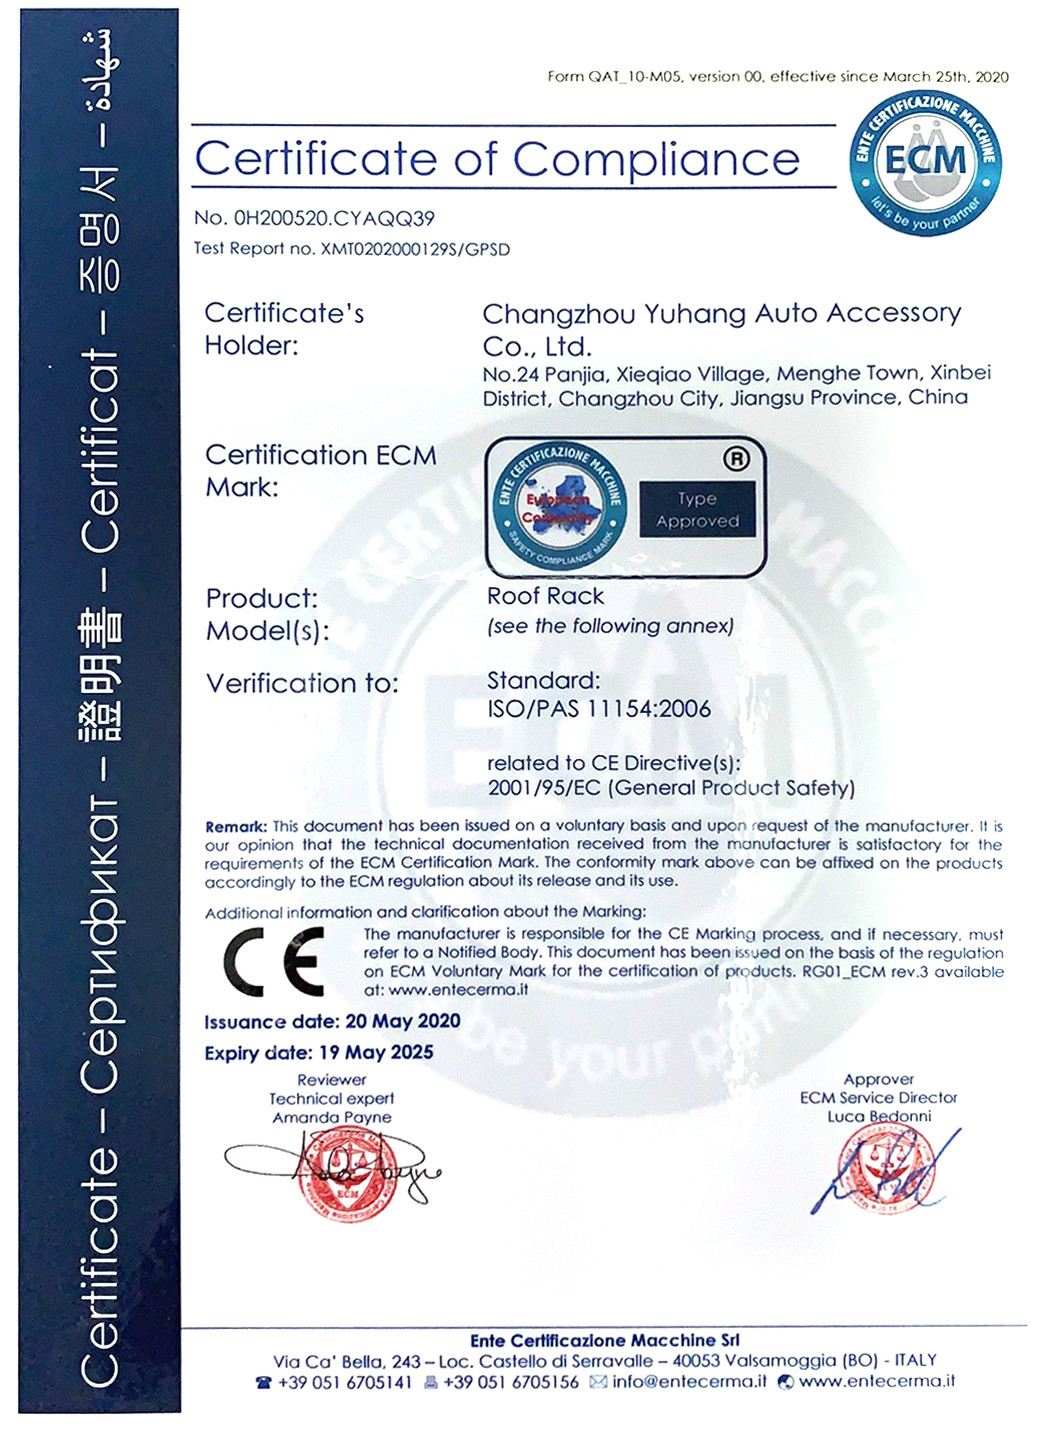 중국 Changzhou Yuhang Auto Accessary Co., Ltd. 인증